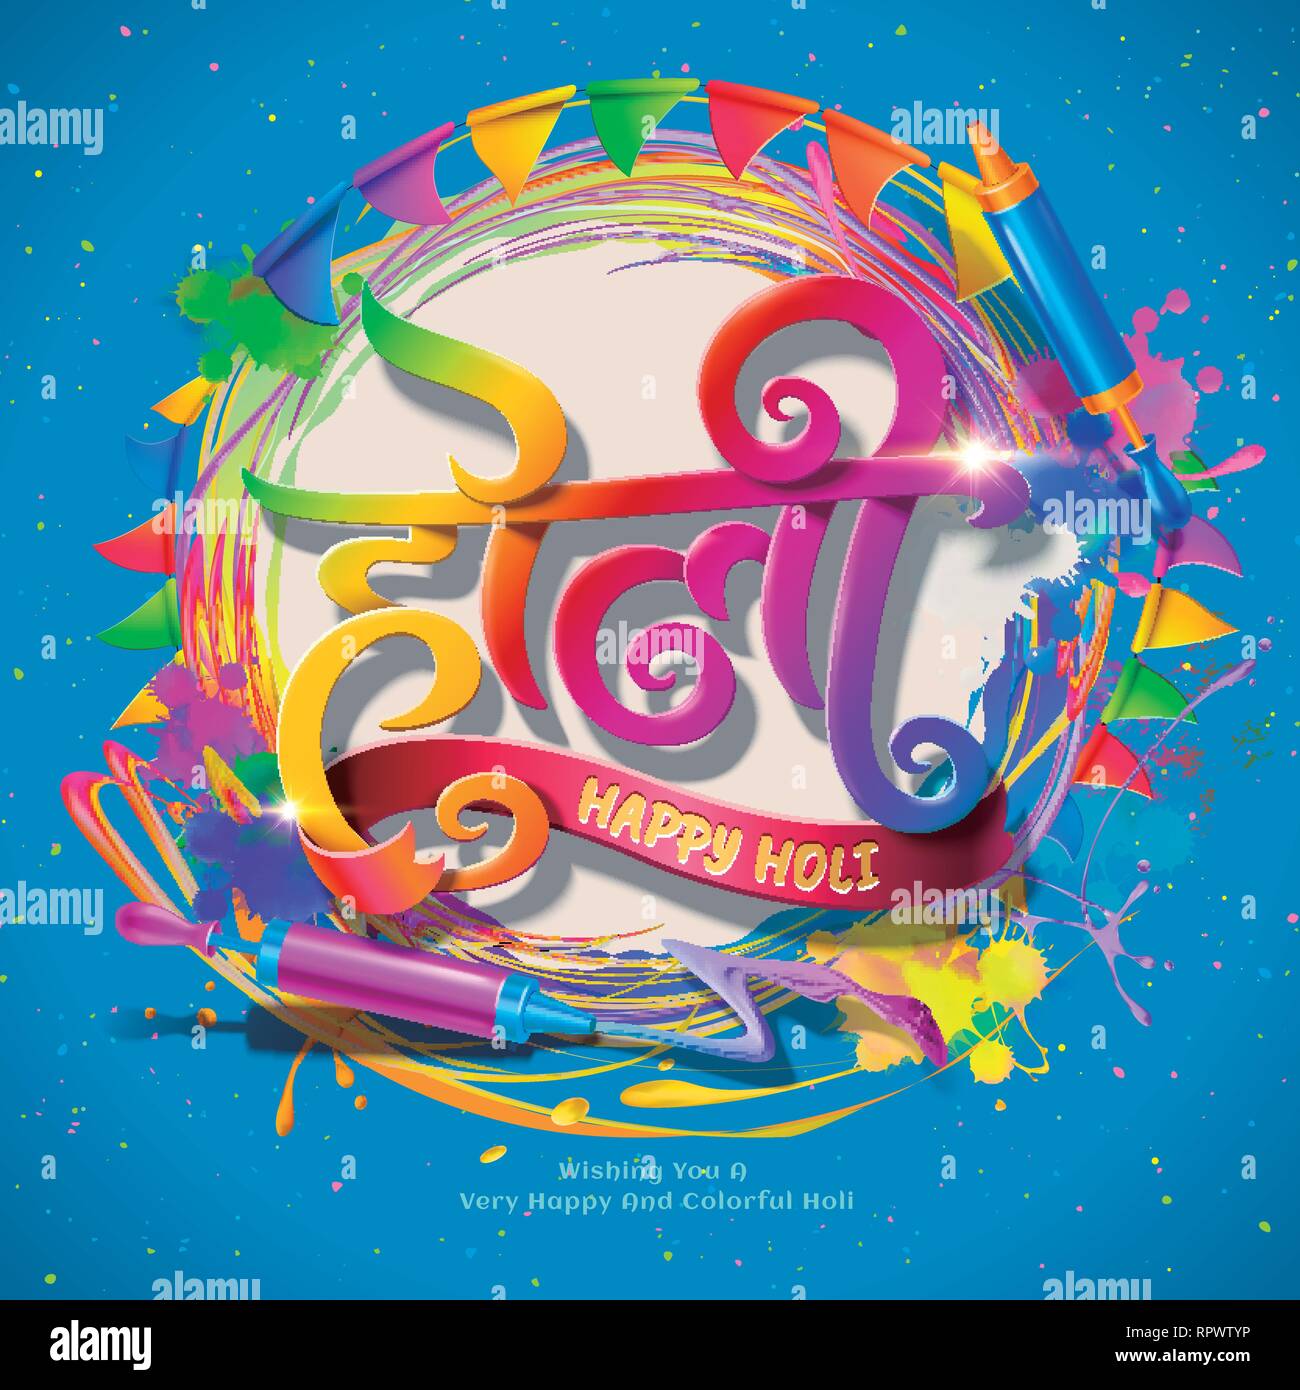 Happy Holi festival avec la projection de la couleur et pichkari sur fond bleu, conception de calligraphie Illustration de Vecteur